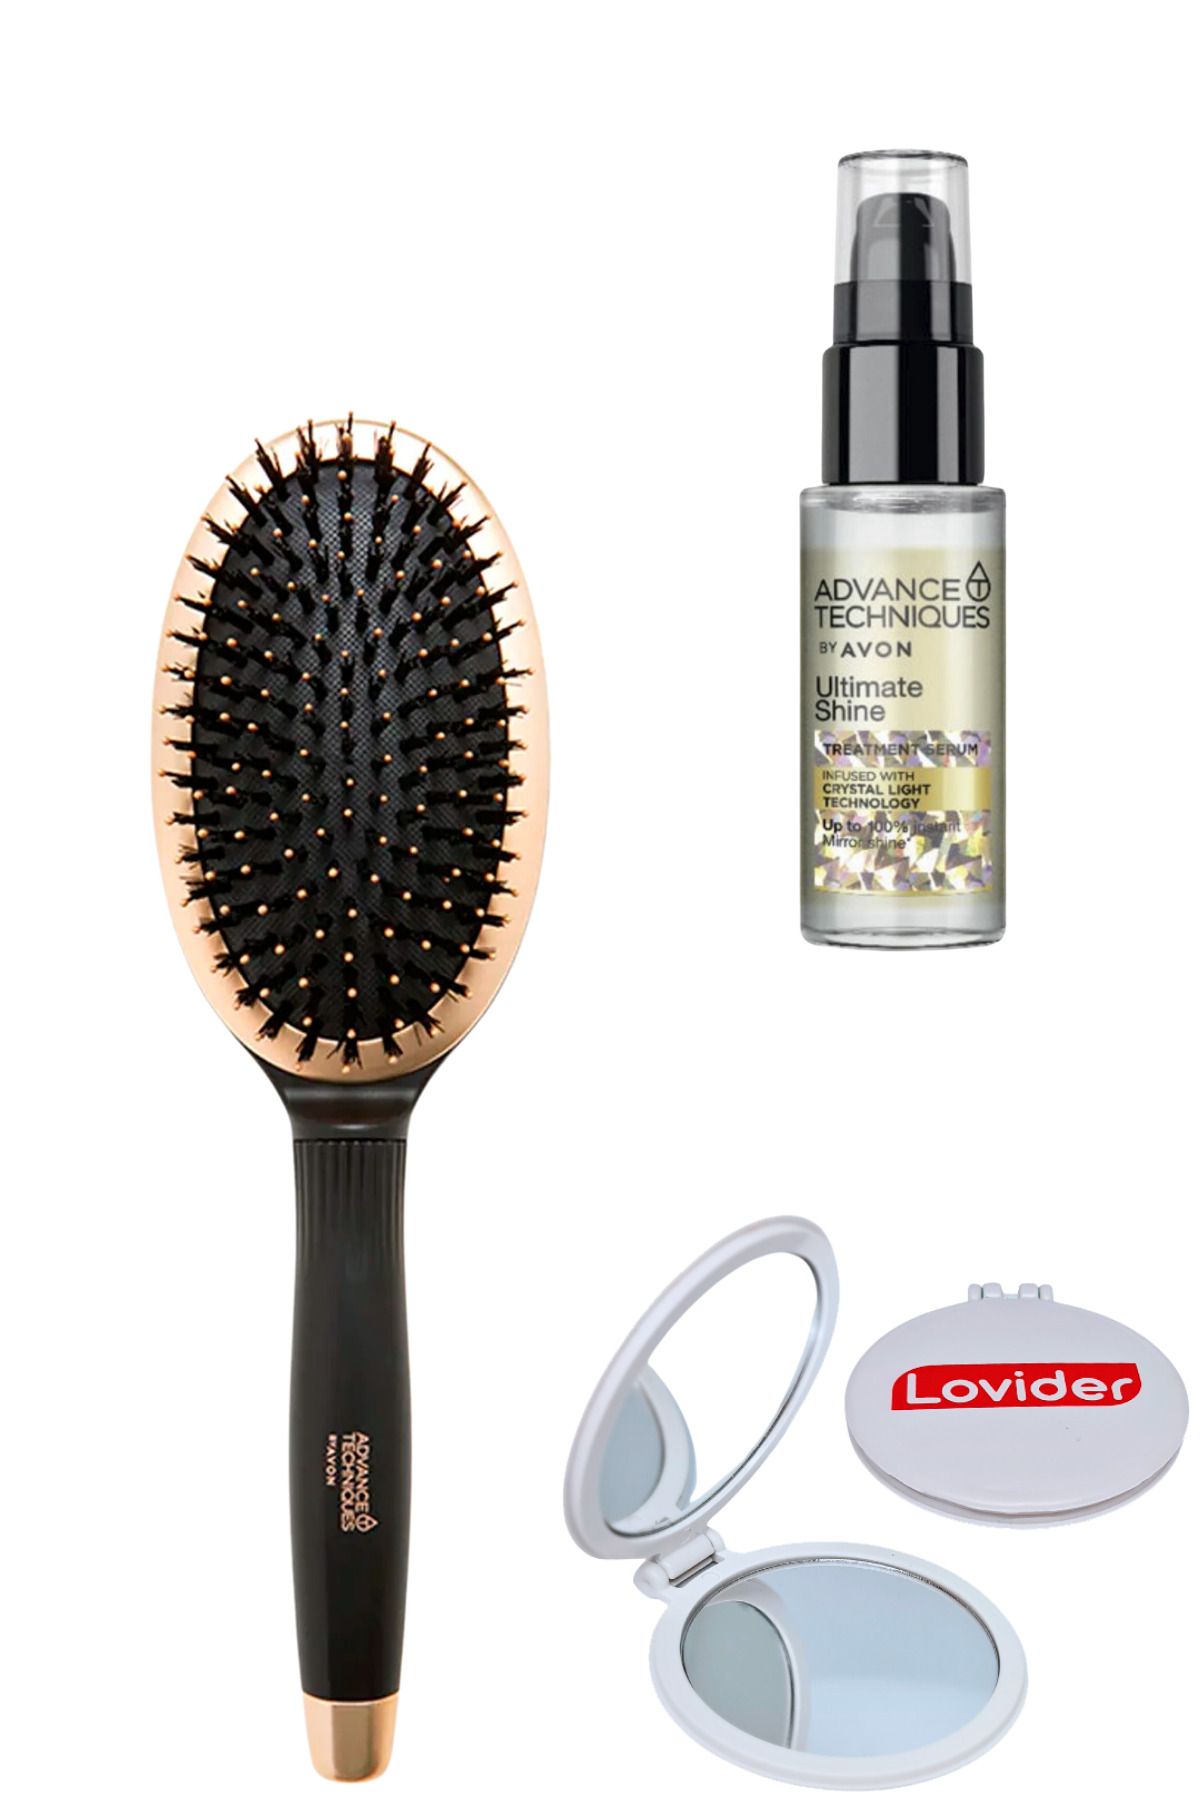 Avon Oval Saç Fırçası + Parlaklık Veren Saç Serumu 30ml + Lovider Cep Aynası